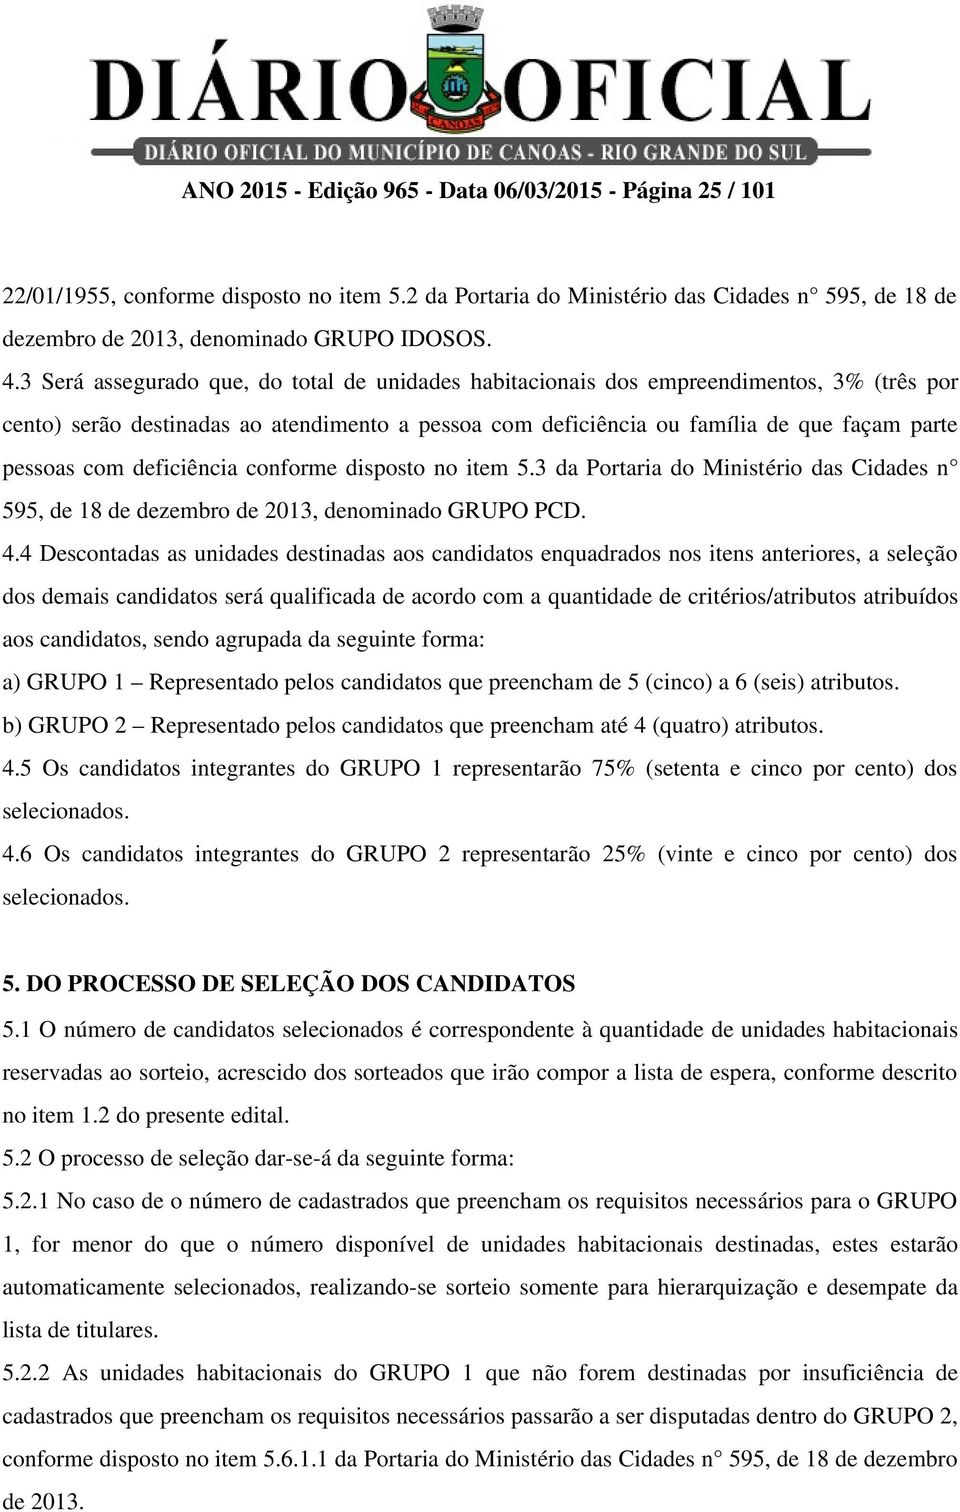 deficiência conforme disposto no item 5.3 da Portaria do Ministério das Cidades n 595, de 18 de dezembro de 2013, denominado GRUPO PCD. 4.